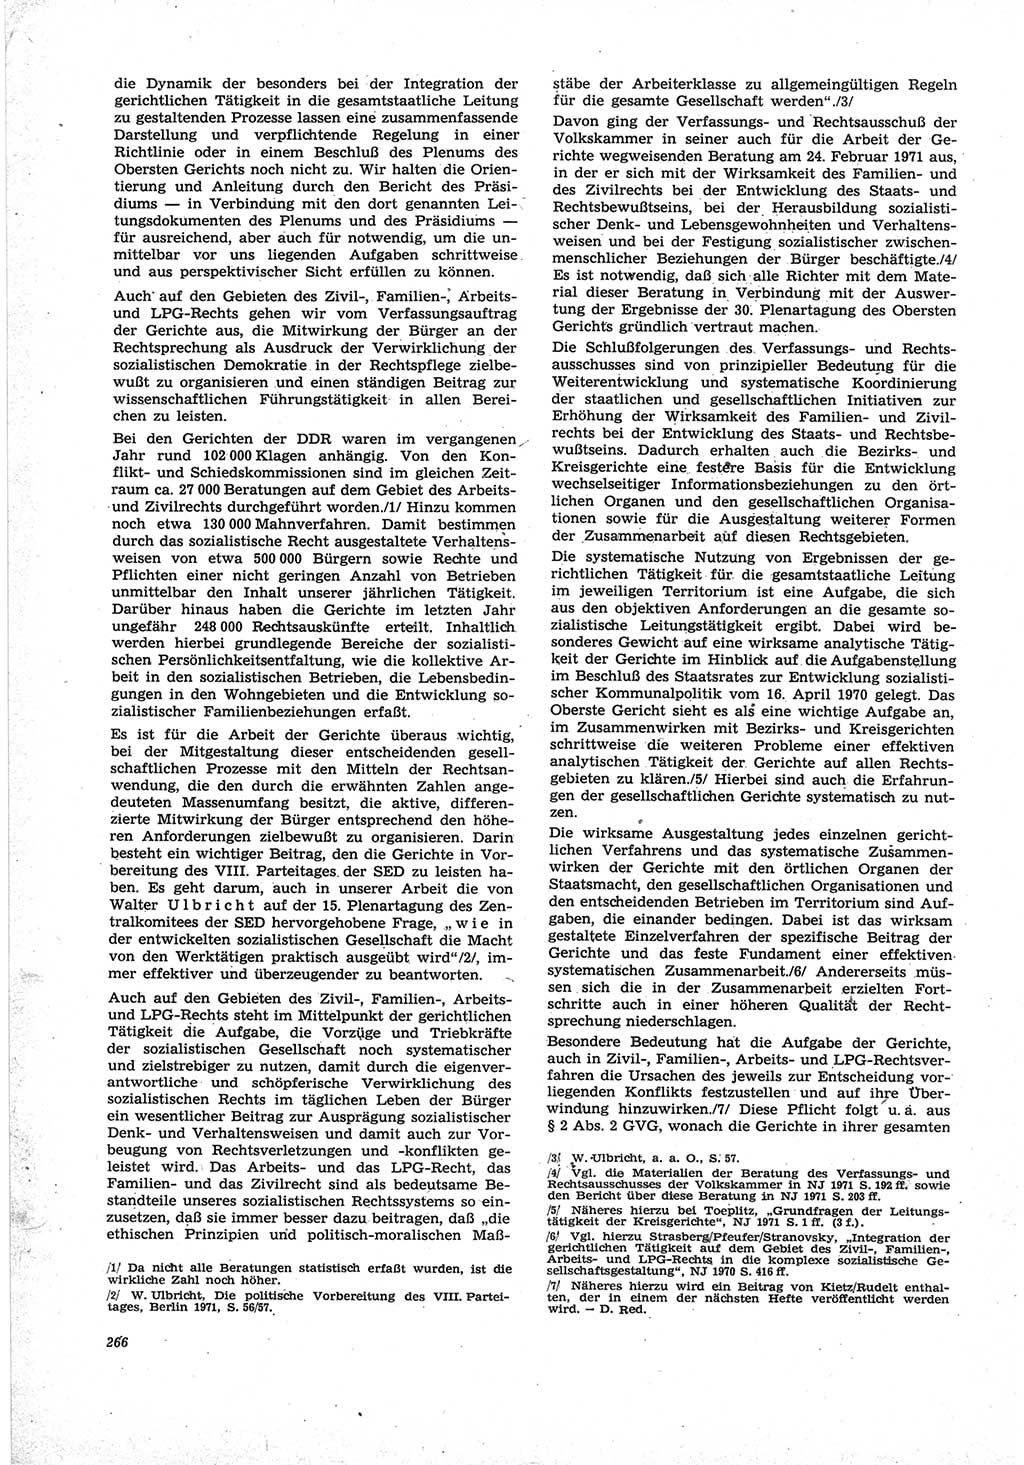 Neue Justiz (NJ), Zeitschrift für Recht und Rechtswissenschaft [Deutsche Demokratische Republik (DDR)], 25. Jahrgang 1971, Seite 266 (NJ DDR 1971, S. 266)